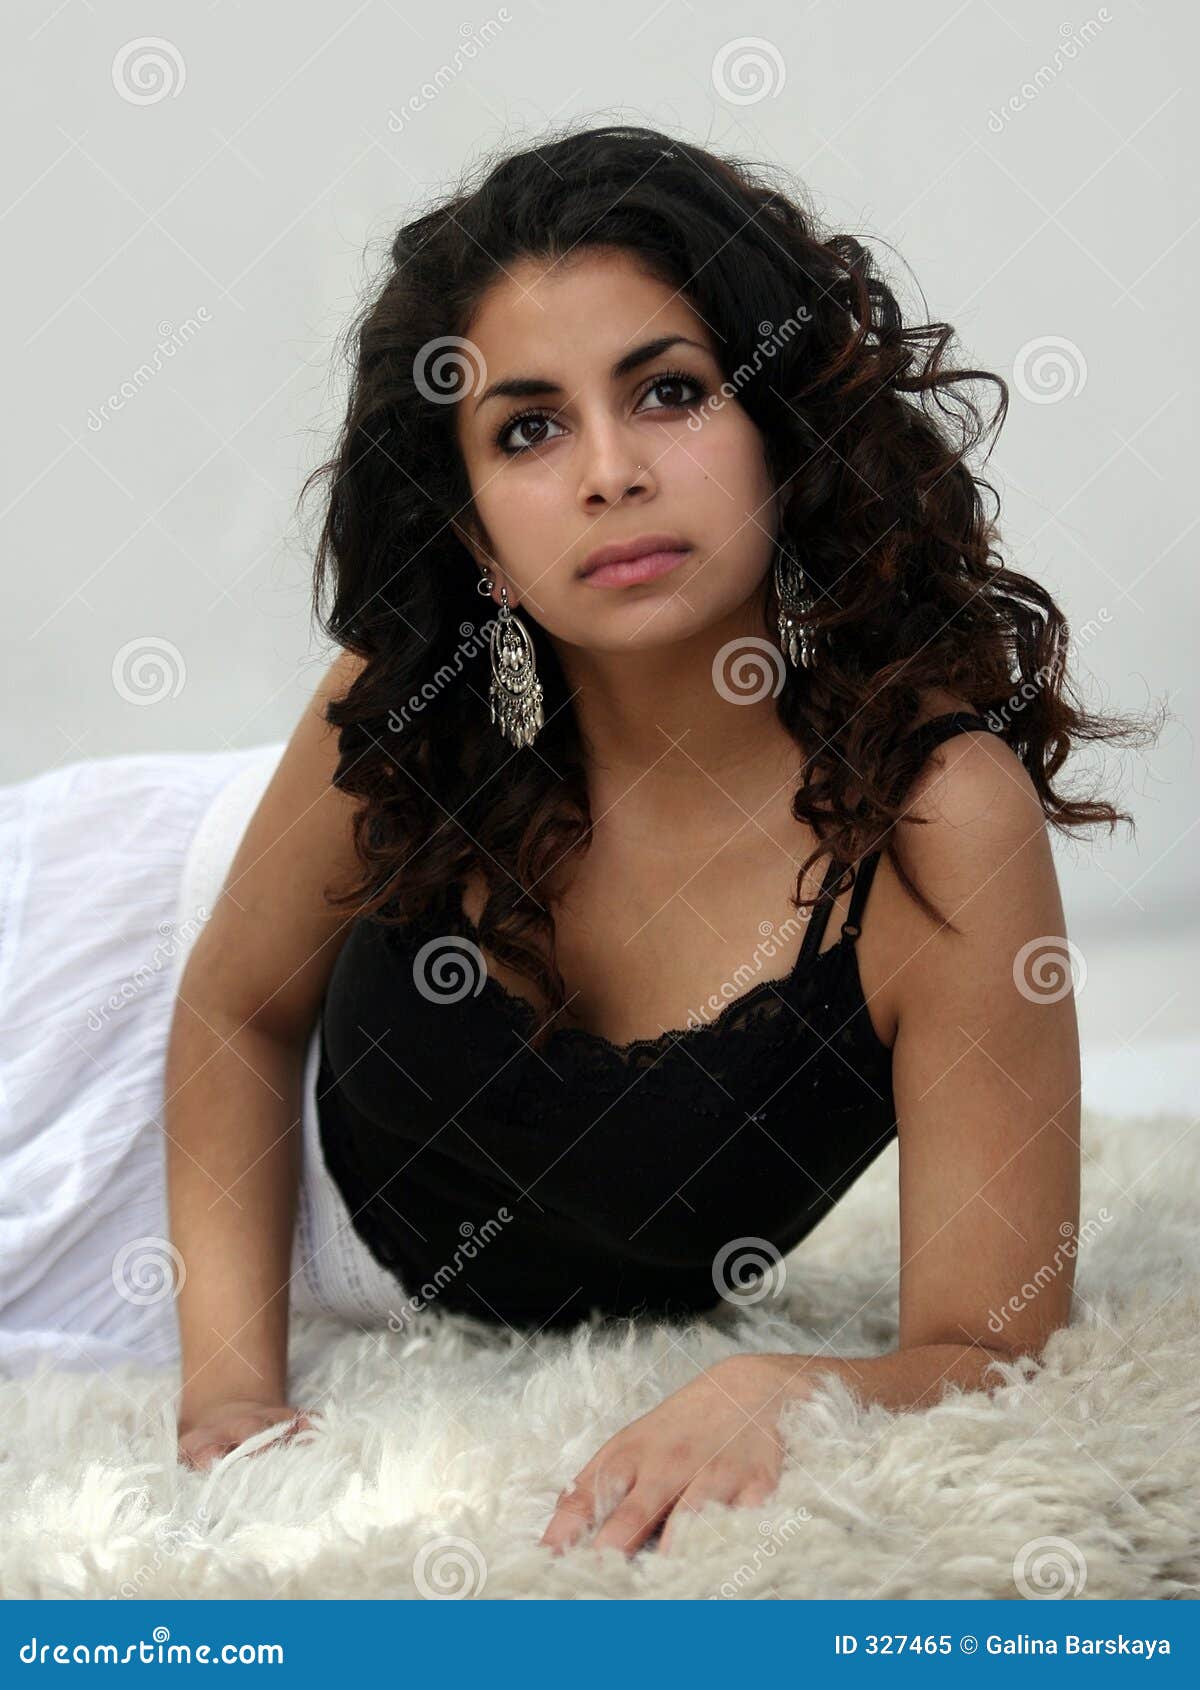 Beautiful Middle Eastern Girl Stock Image Image Of Earrings Teenager